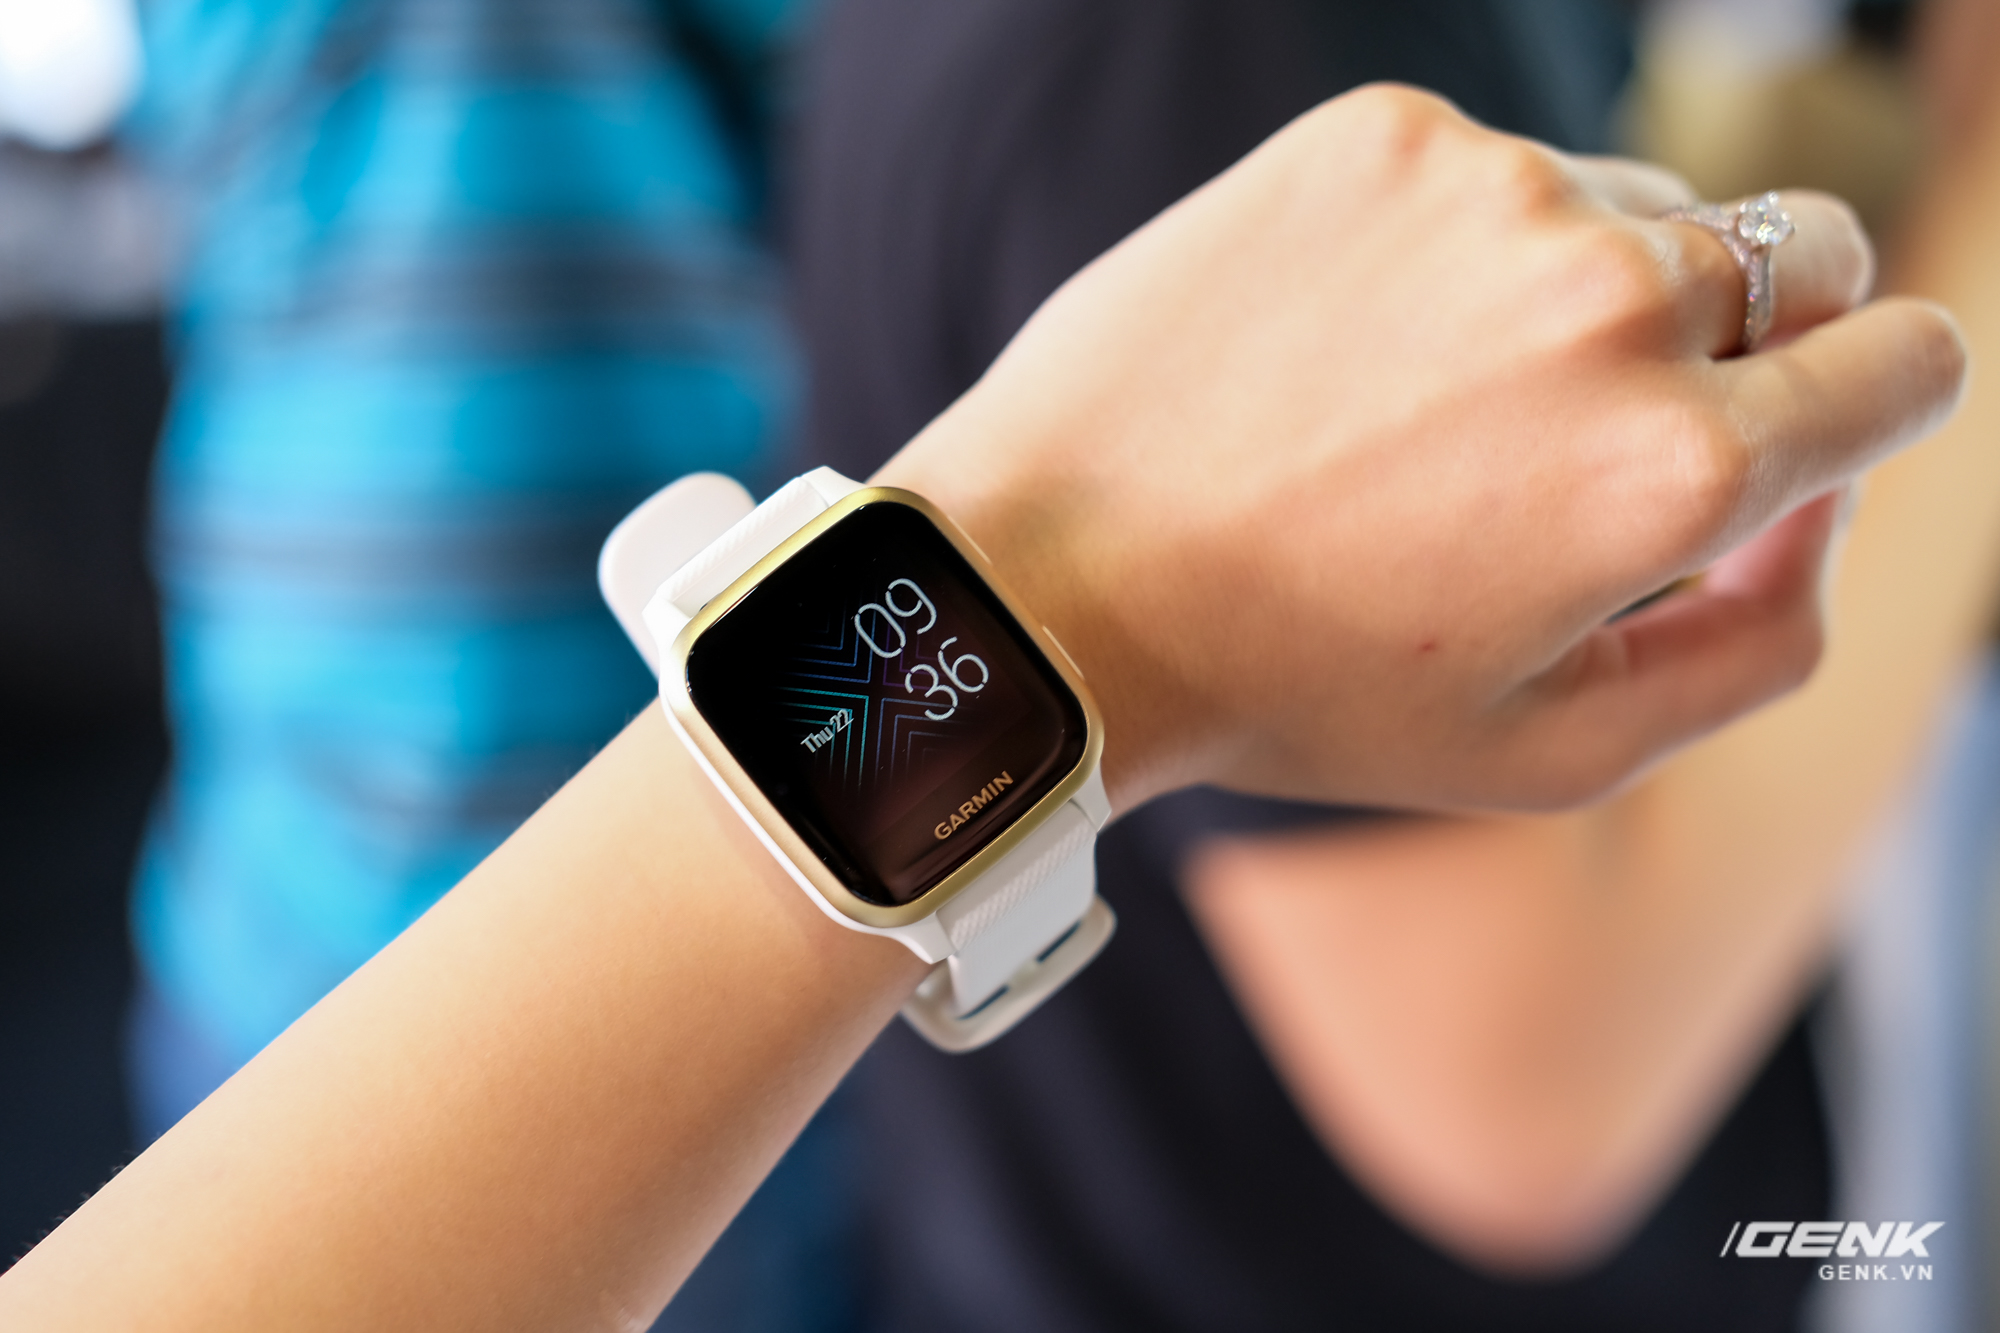 Cận cảnh smartwatch Garmin Venu Sq: Nhỏ nhắn, nhẹ đến nỗi đeo như không đeo, 20 chế độ luyện tập thể thao, đo được nồng độ Oxy trong máu, giá bằng 1 nửa bản Venu gốc - Ảnh 1.